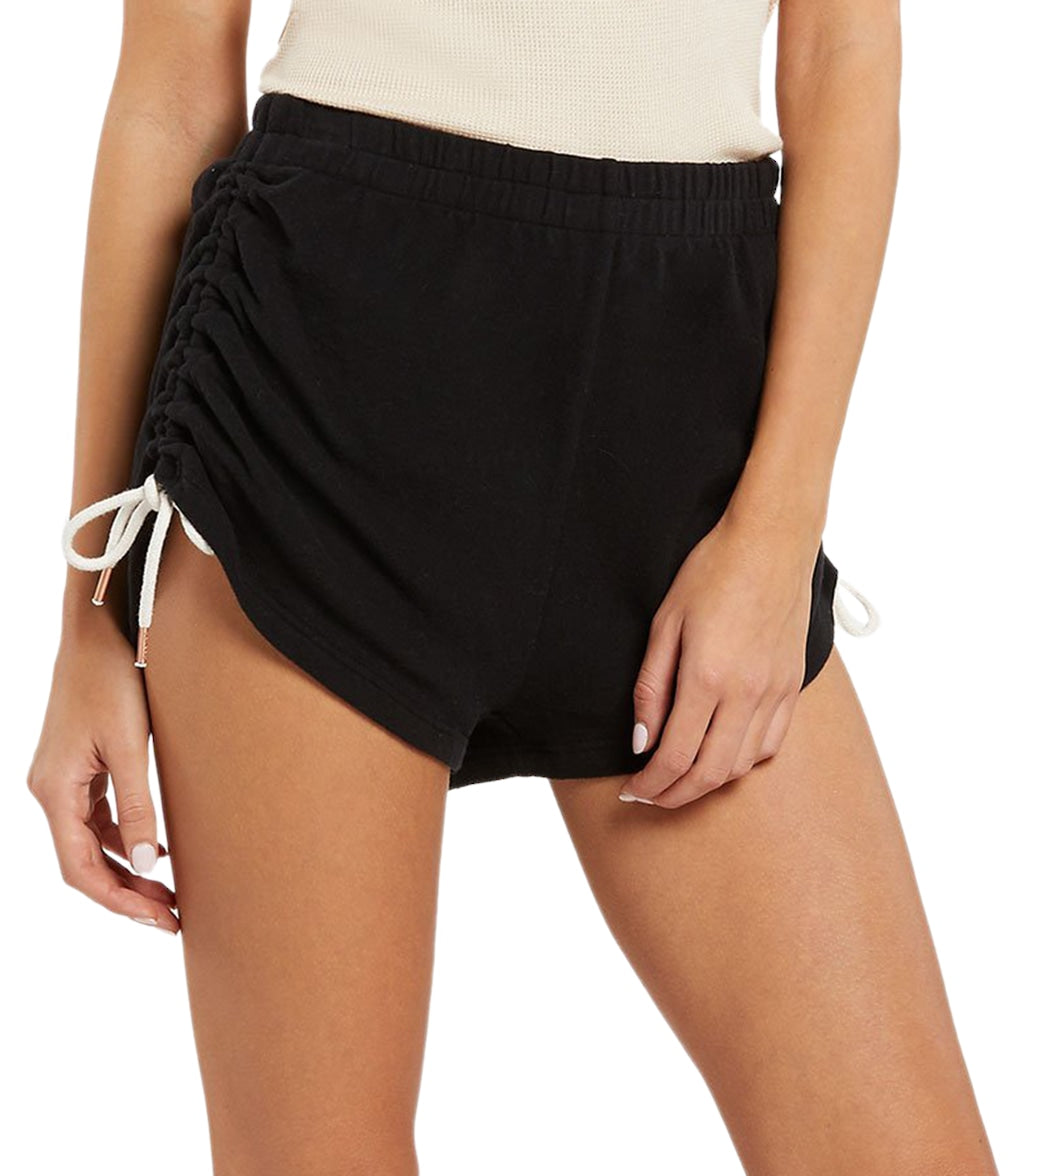 Volcom Women's Lil Fleece Short - Black Large Cotton - Swimoutlet.com